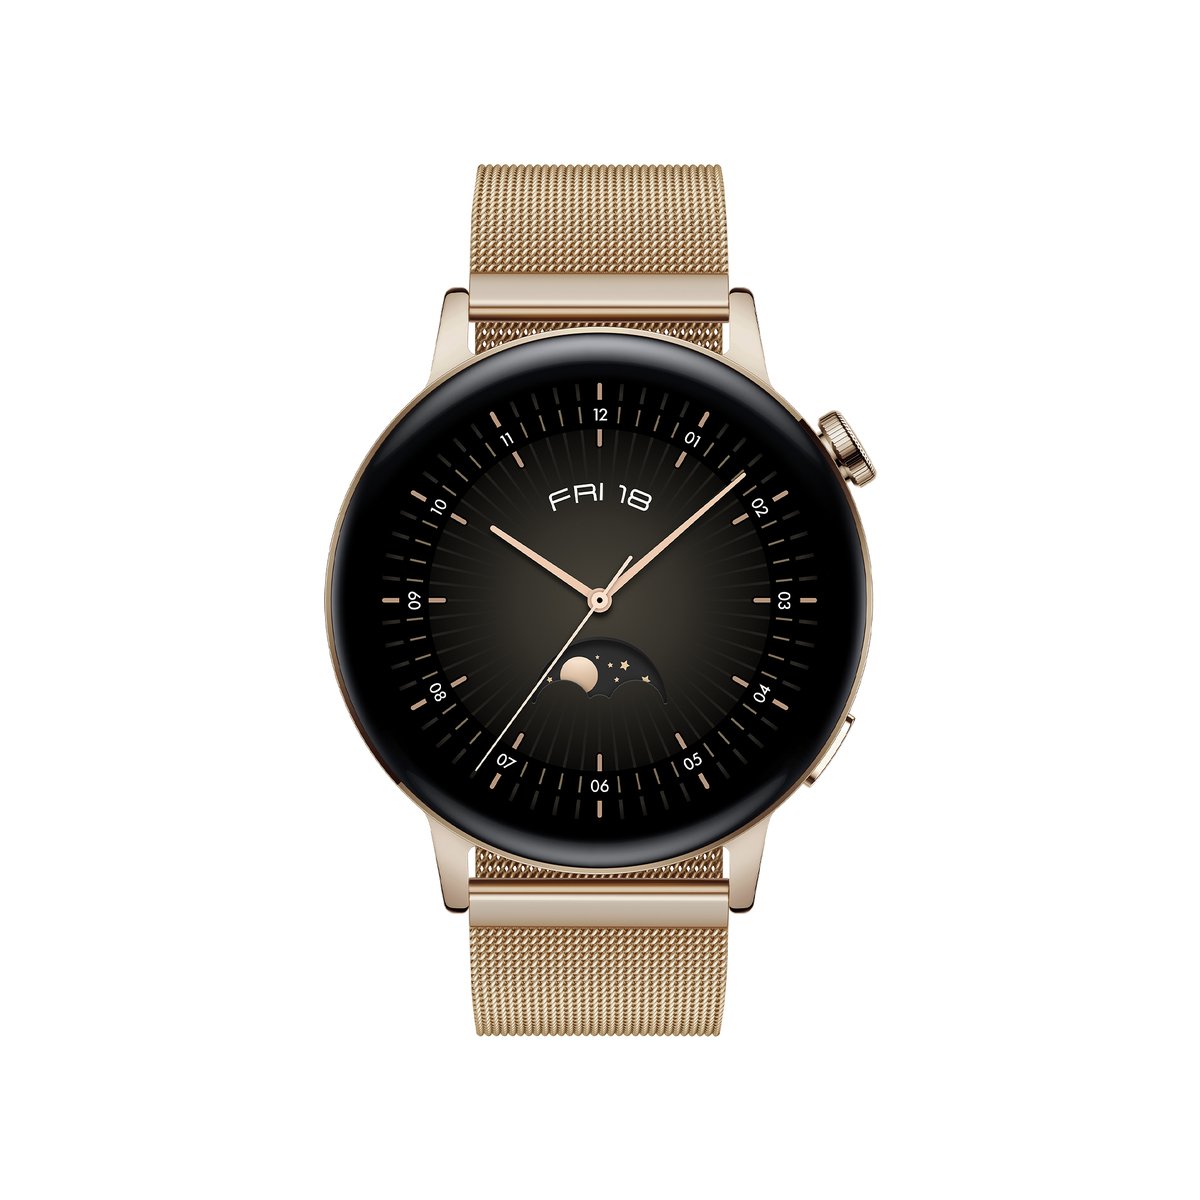 Huawei Smart Watch GT3 Milo B19T 42mm Gold